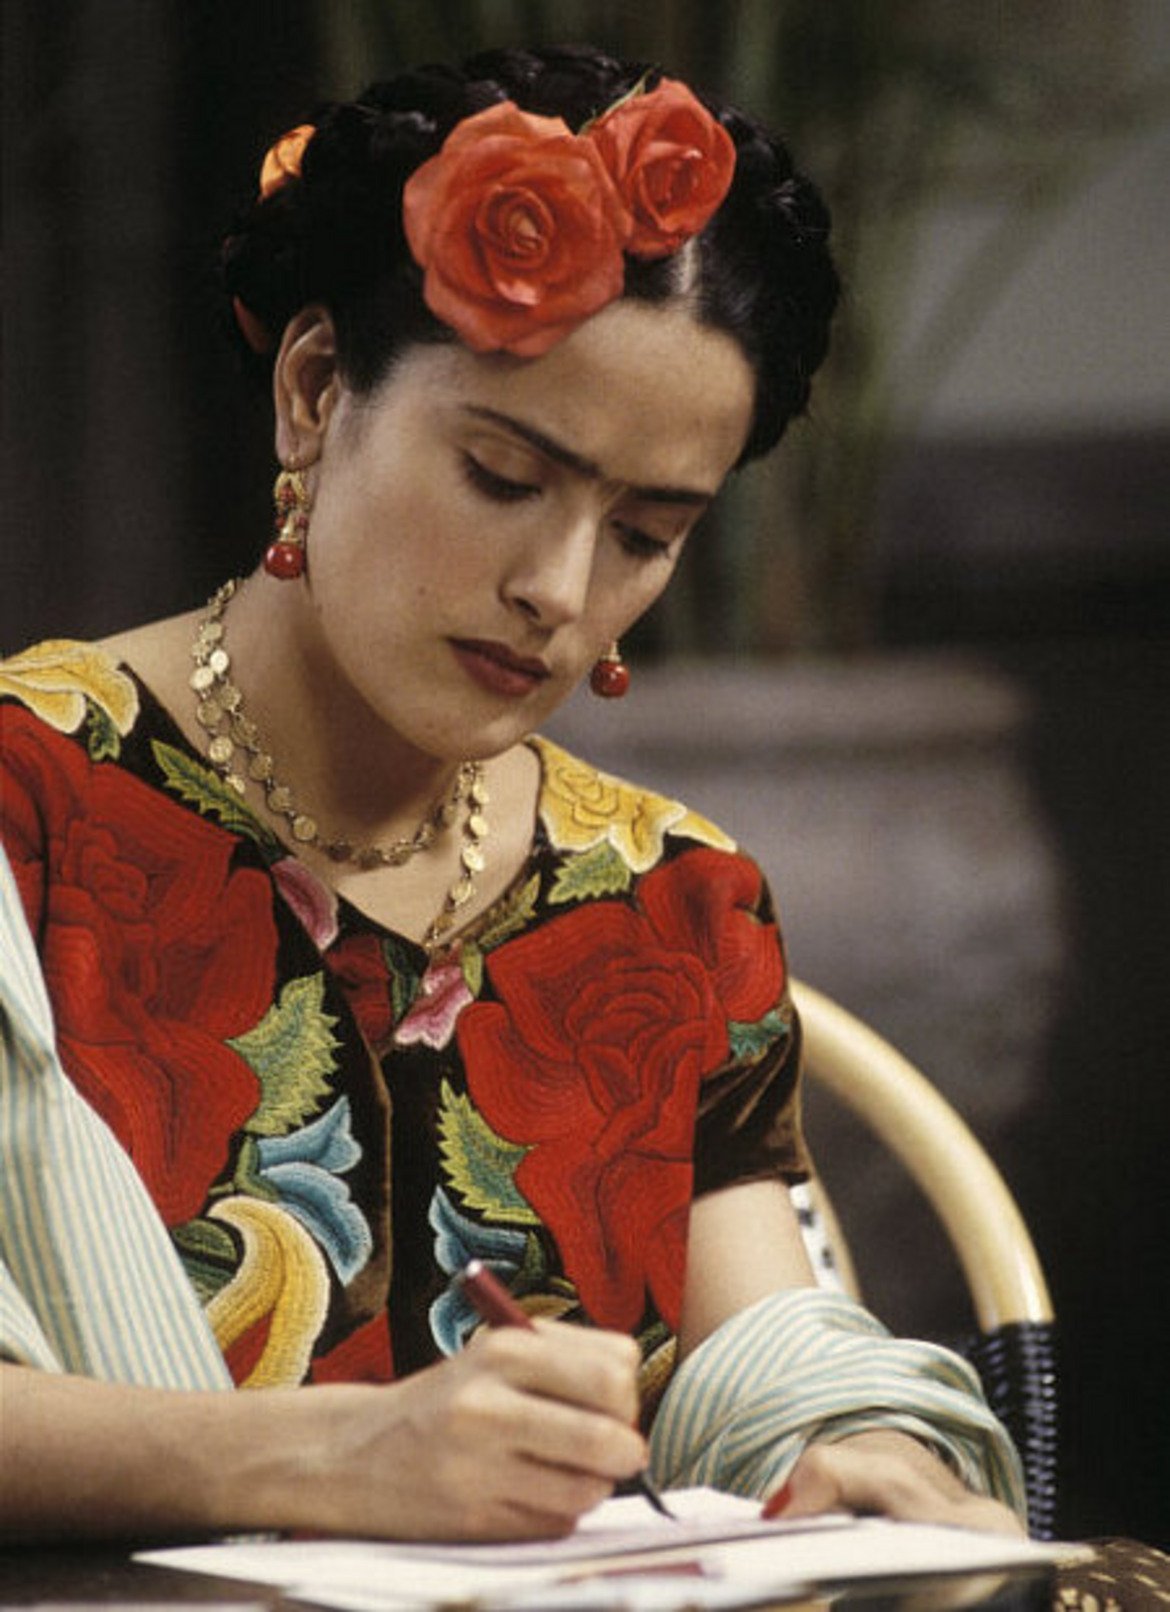  Салма Хайек - Фрида Кало 

"Фрида" се концентрира върху противоречивата личност на художничката и бурната й връзка с Диего Ривера. Филмът е посрещнат противоречиво от критиката, но си има и своите фенове. Факт е обаче, че Салма Хайек прави страхотна роля.